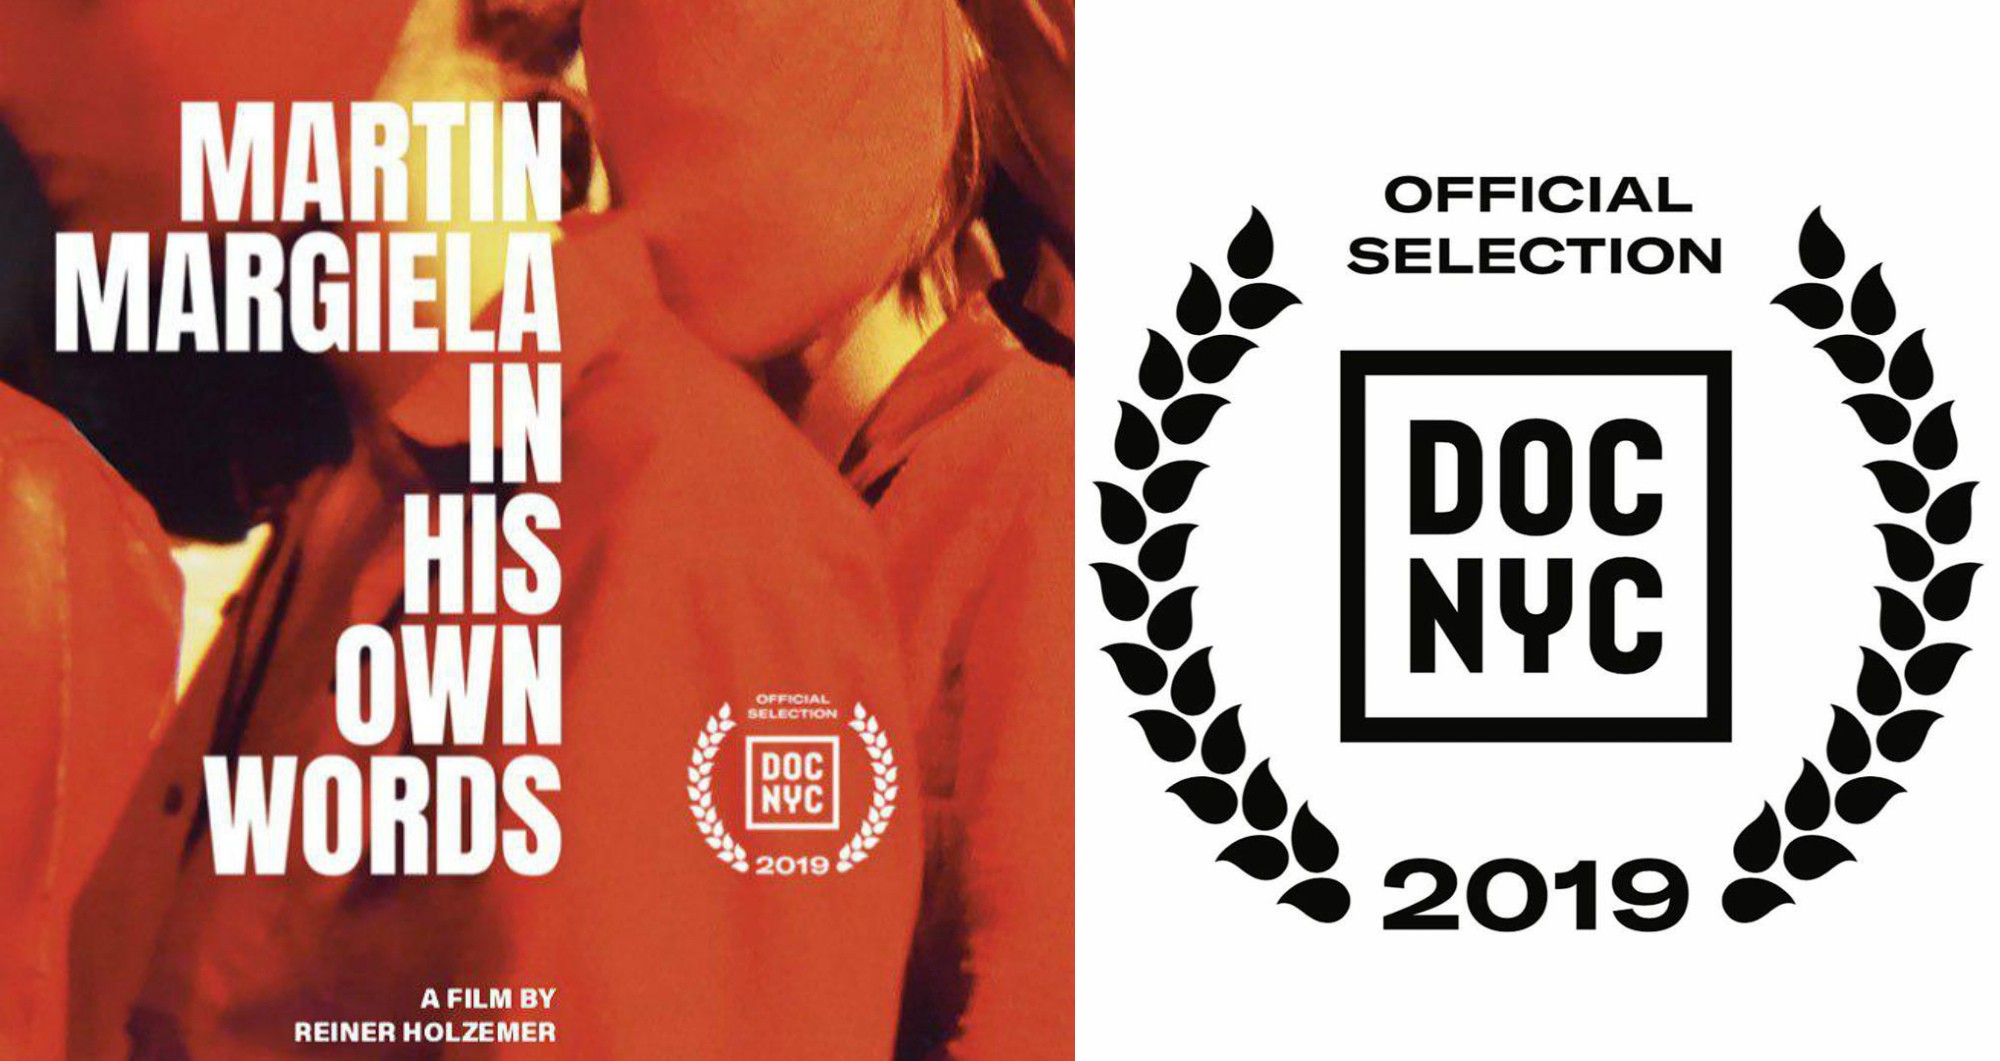 На фестивале документального кино DOC NYC впервые покажут фильм о Мартине Маржеле